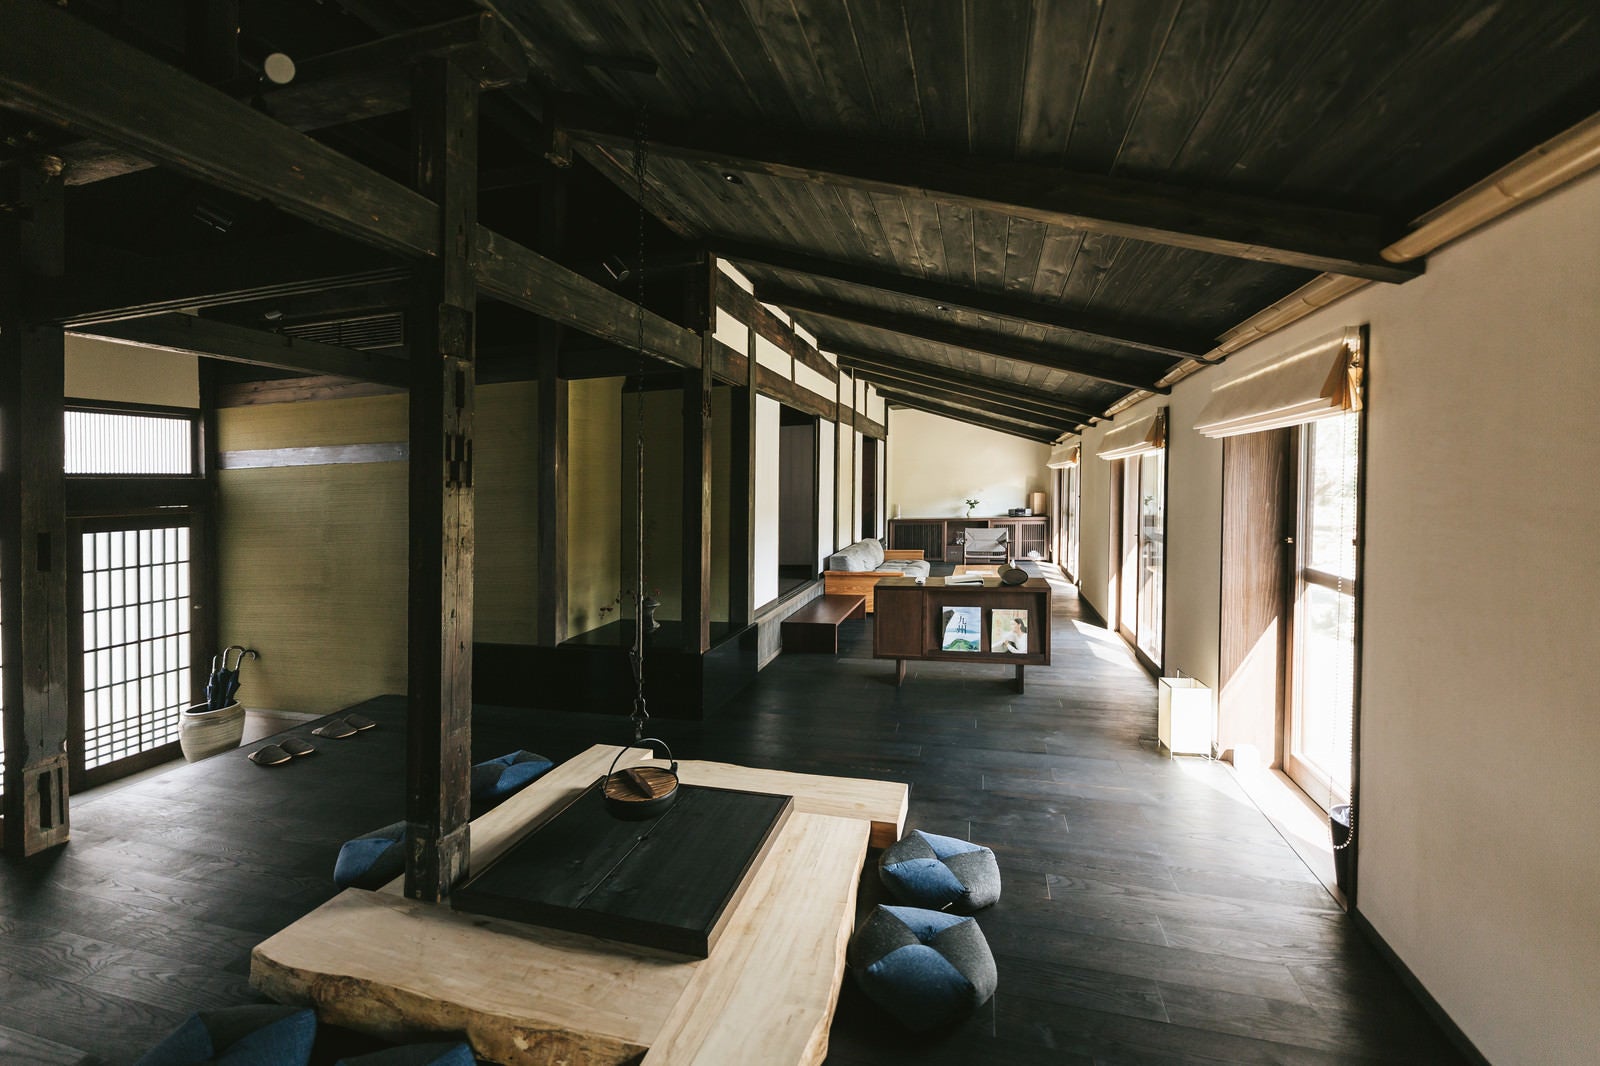 「高床と伝統的な囲炉裏のあるリノベーション古民家宿泊施設」の写真